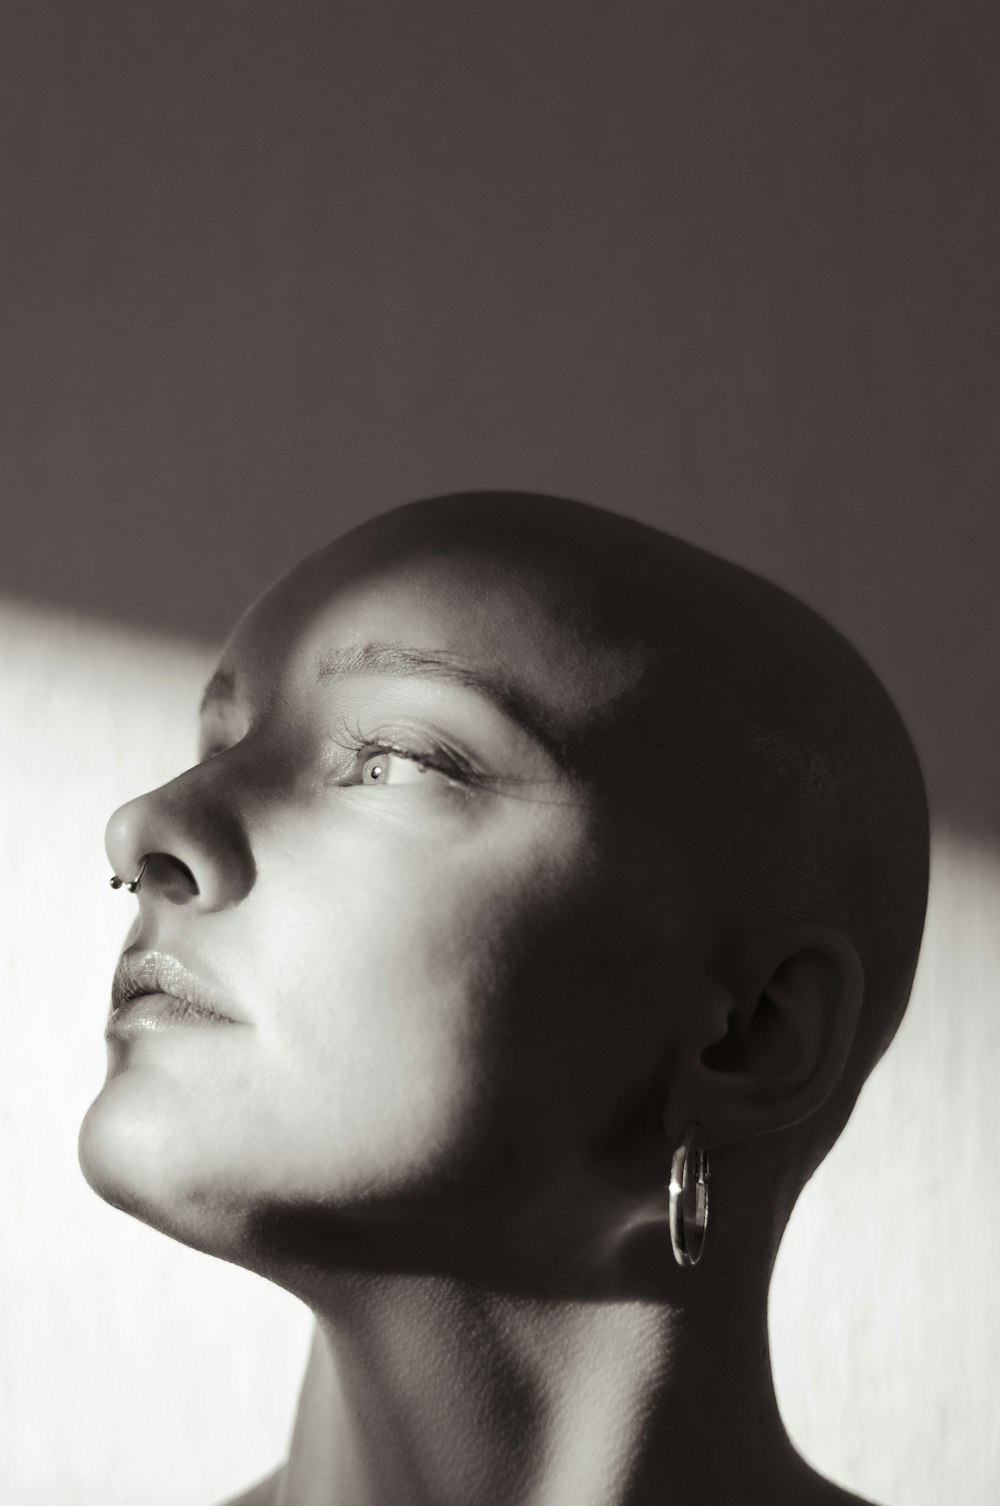 Una foto en blanco y negro de la cabeza de una mujer